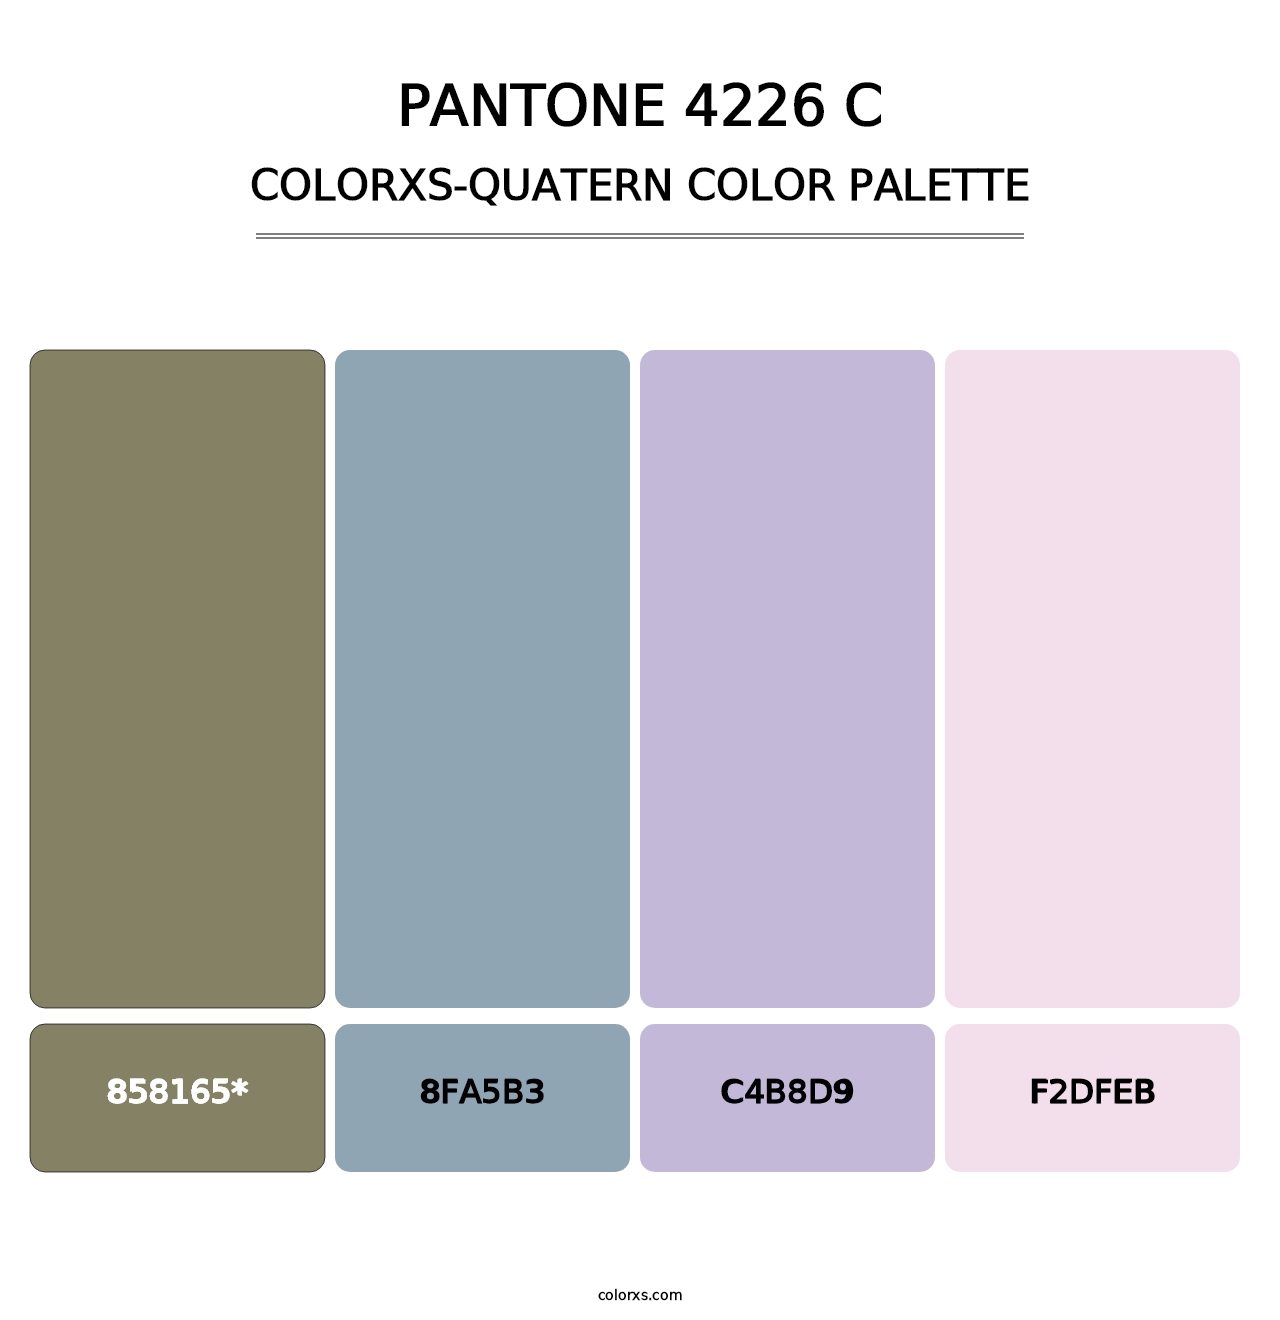 PANTONE 4226 C - Colorxs Quatern Palette